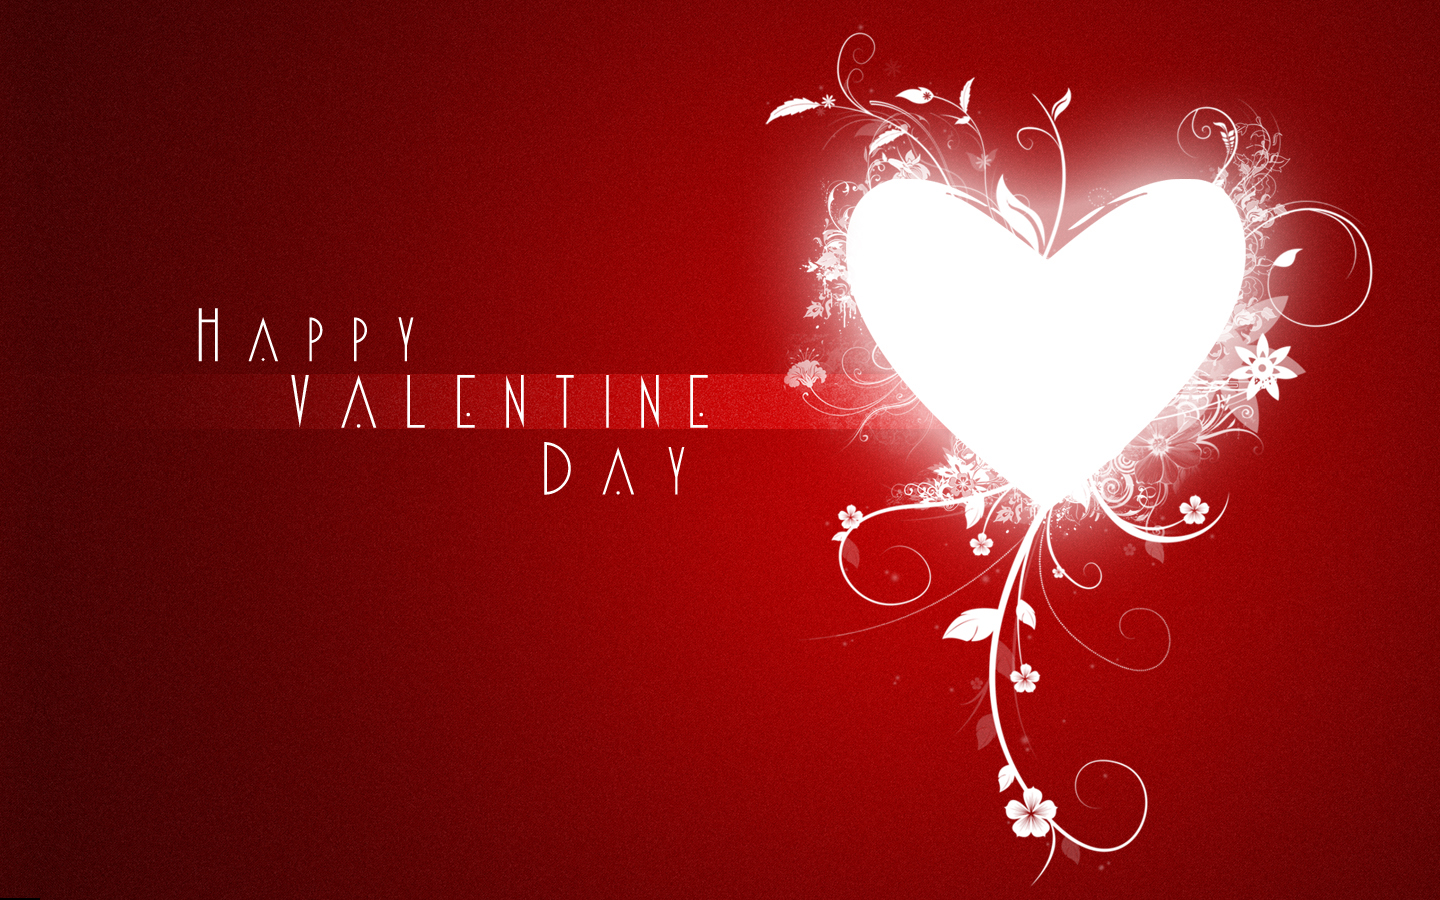 발렌타인 데이 벽지,심장,사랑,발렌타인 데이,빨간,본문